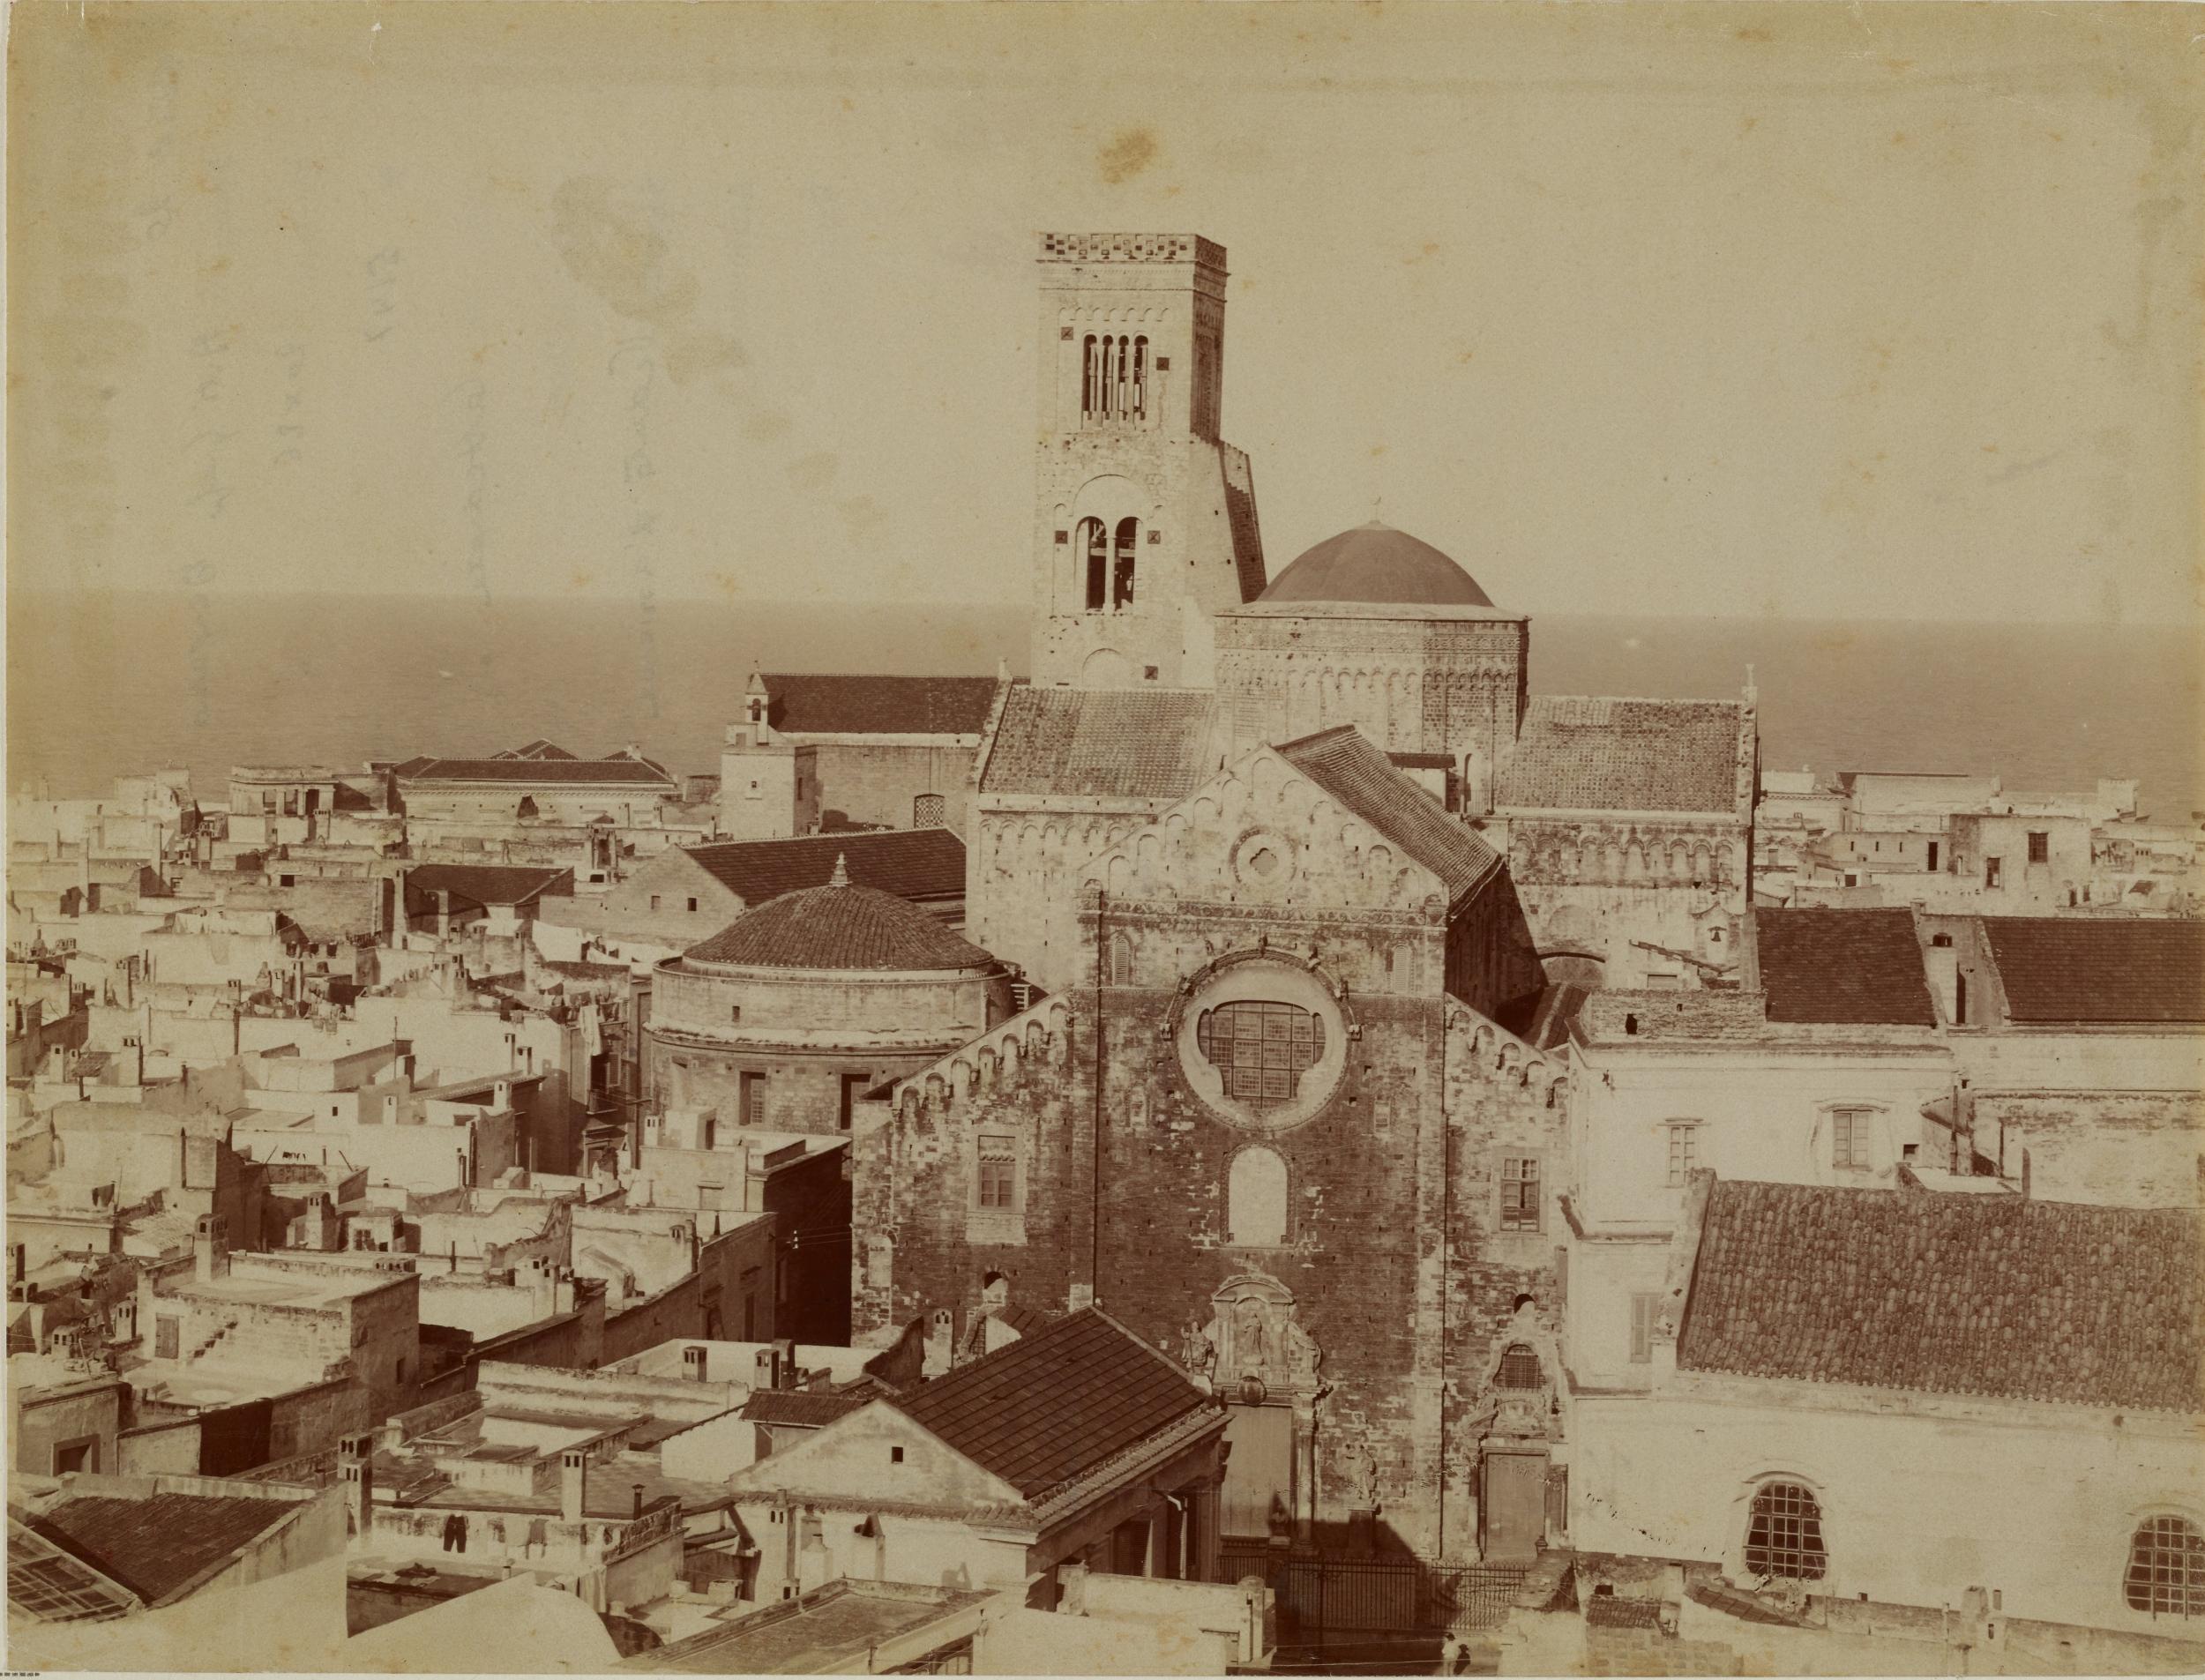 Fotografo non identificato, Bari - Cattedrale di S. Sabino, veduta d'insieme della cattedrale,1931 ante, albumina/carta, MPI136588